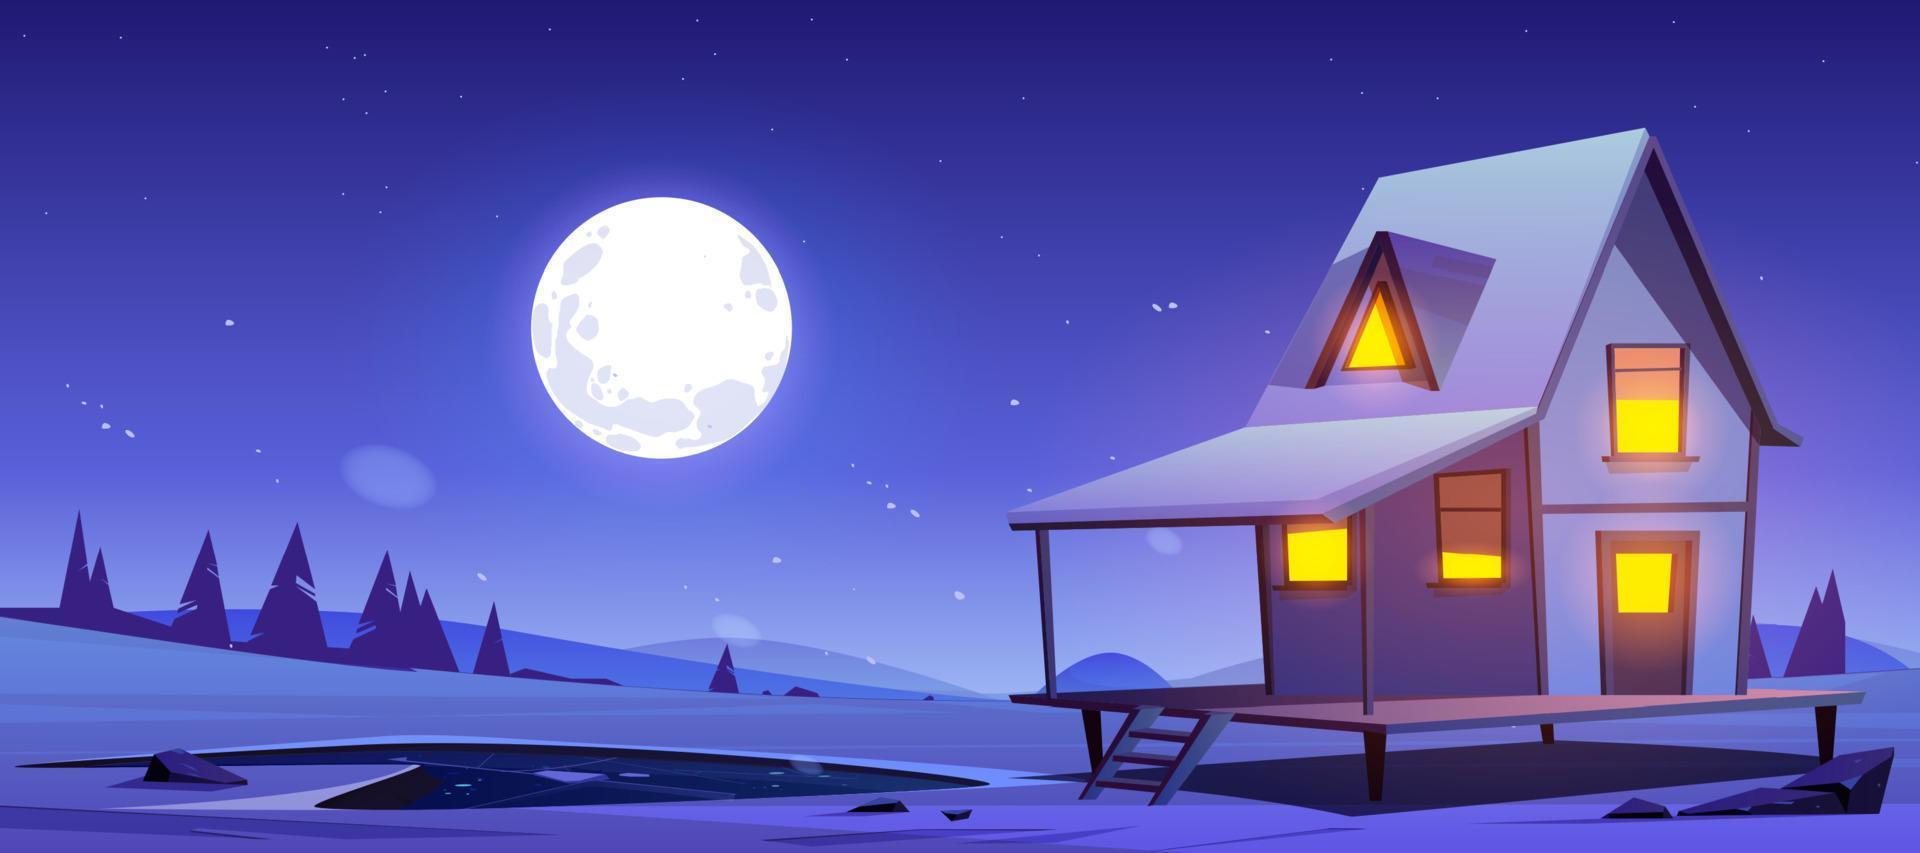 Haus auf Hügel mit Schnee und gefrorenem Teich in der Nacht vektor